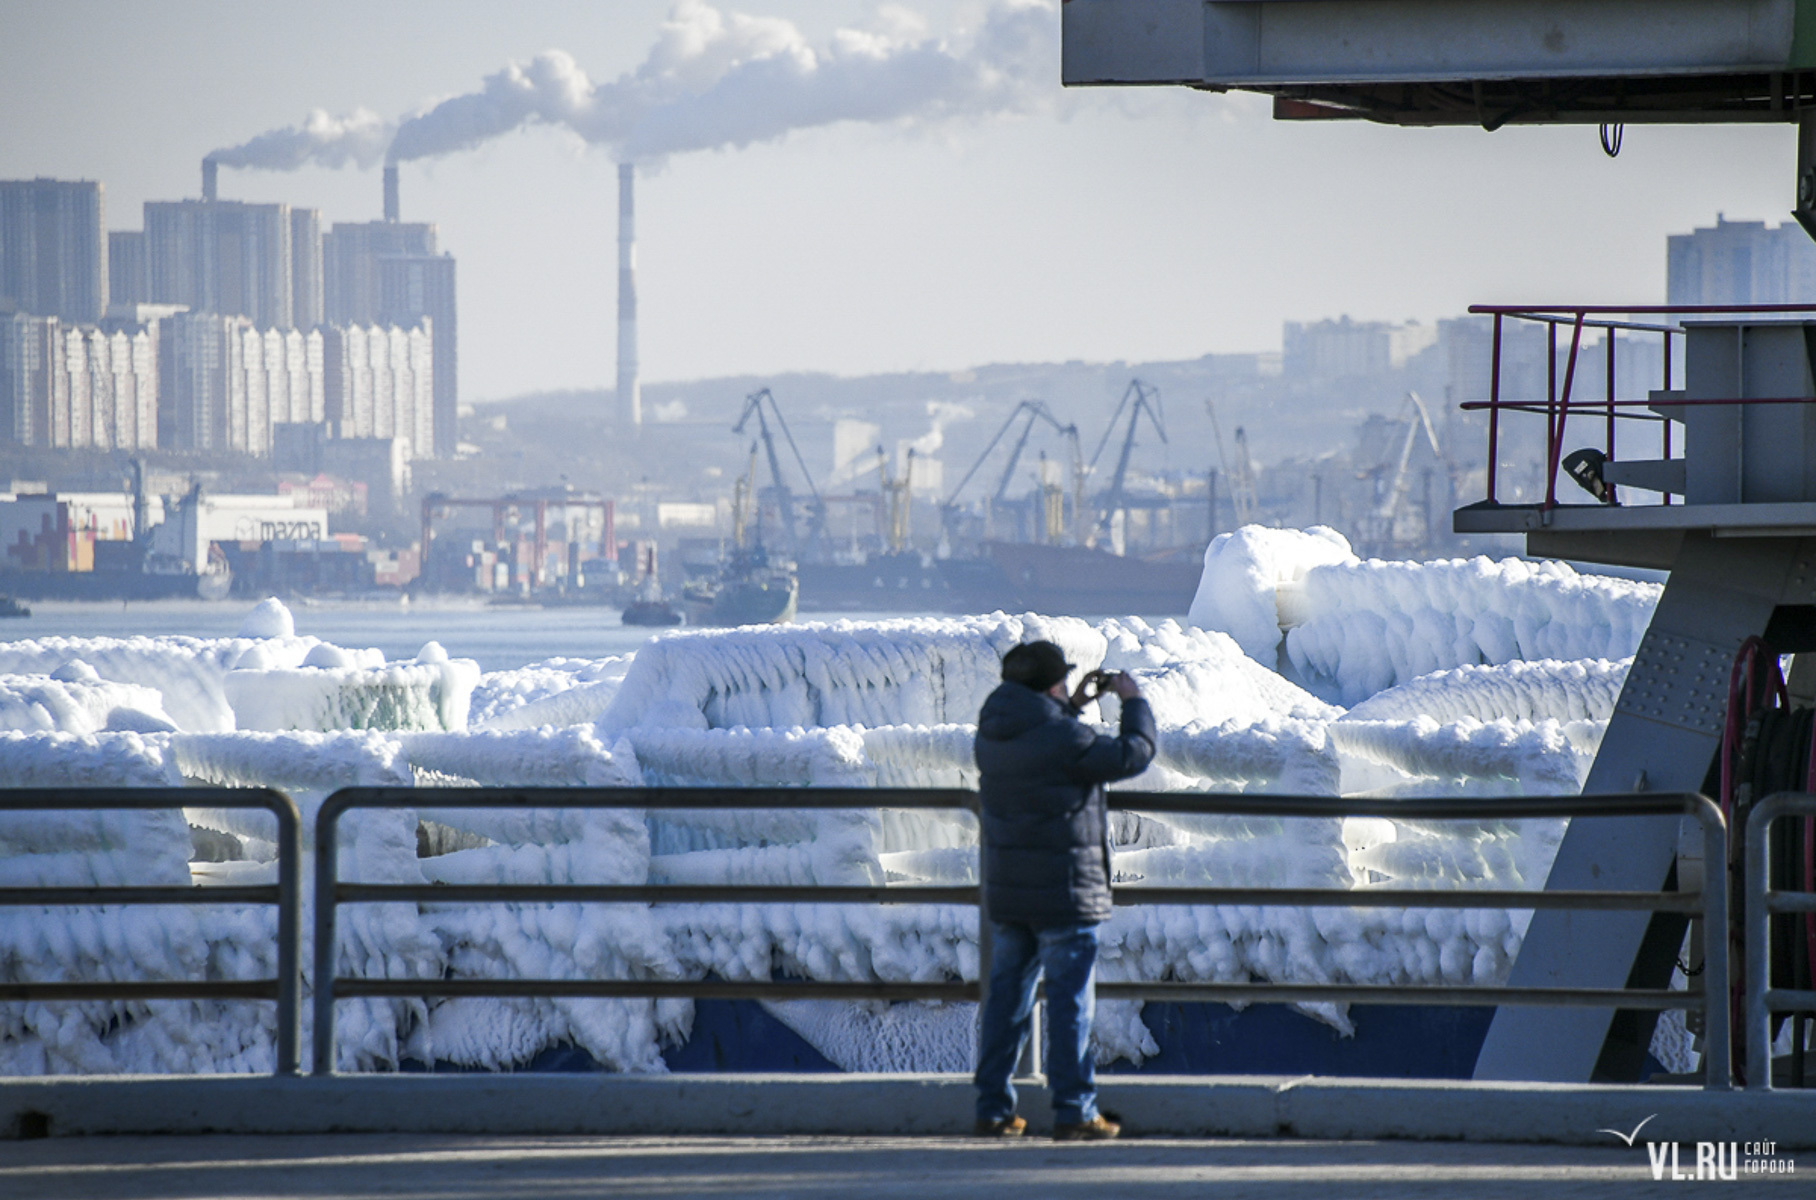 Видео: как выглядит вблизи один из замерзших автомобилей во Владивостоке